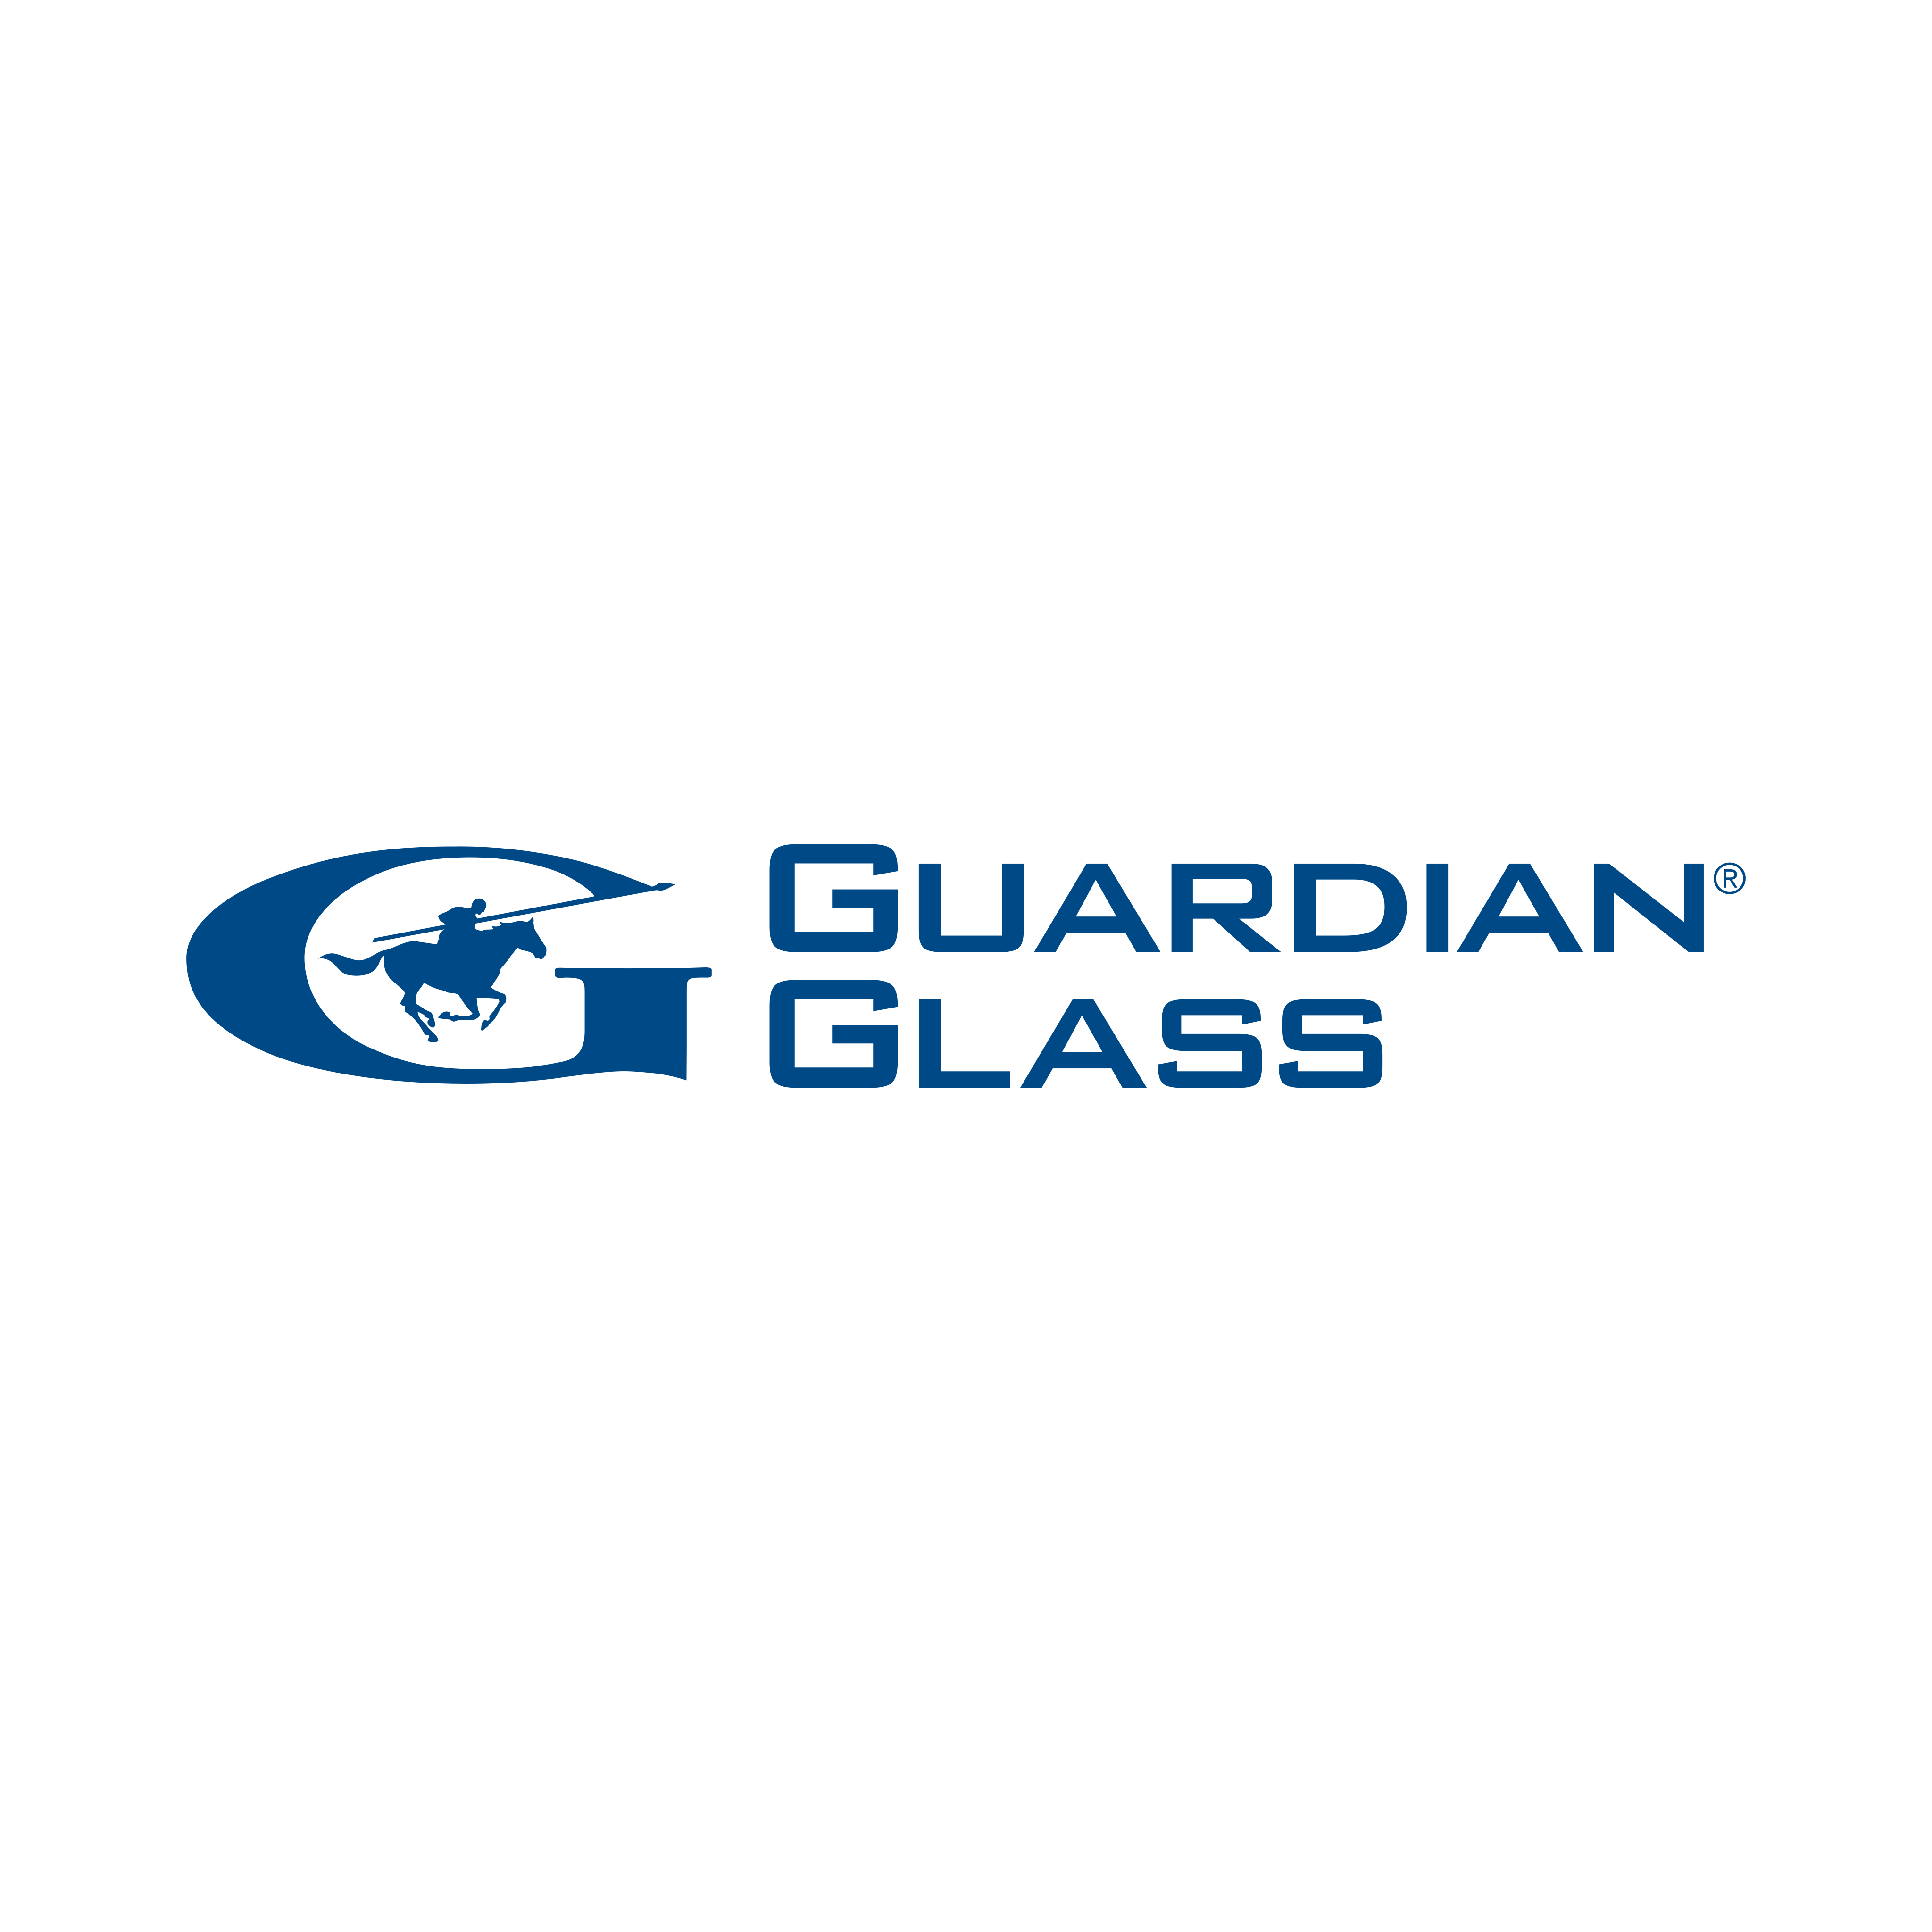 Guardian Logo Vector - cleointeriores